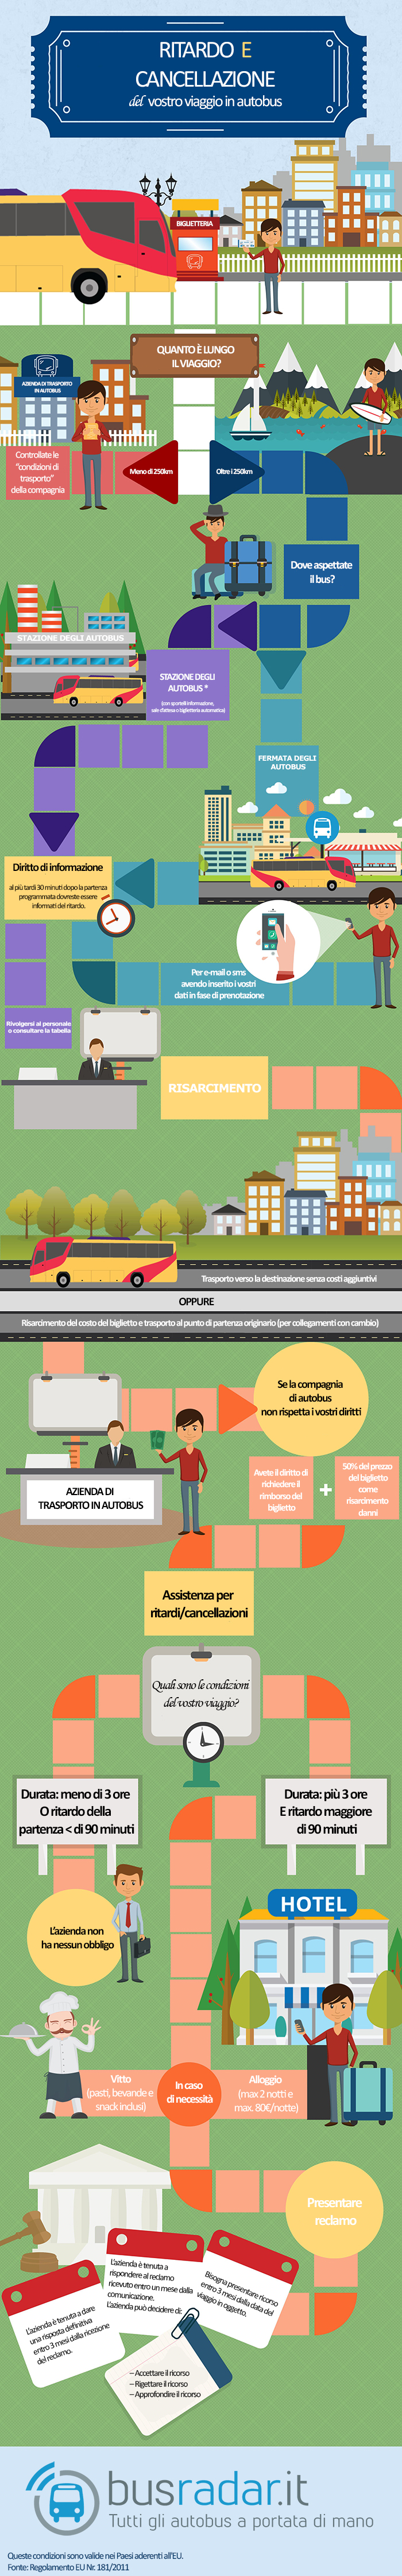 
Infografik zum Thema Fernbus Verspätung und Annullierung der Busfahrt